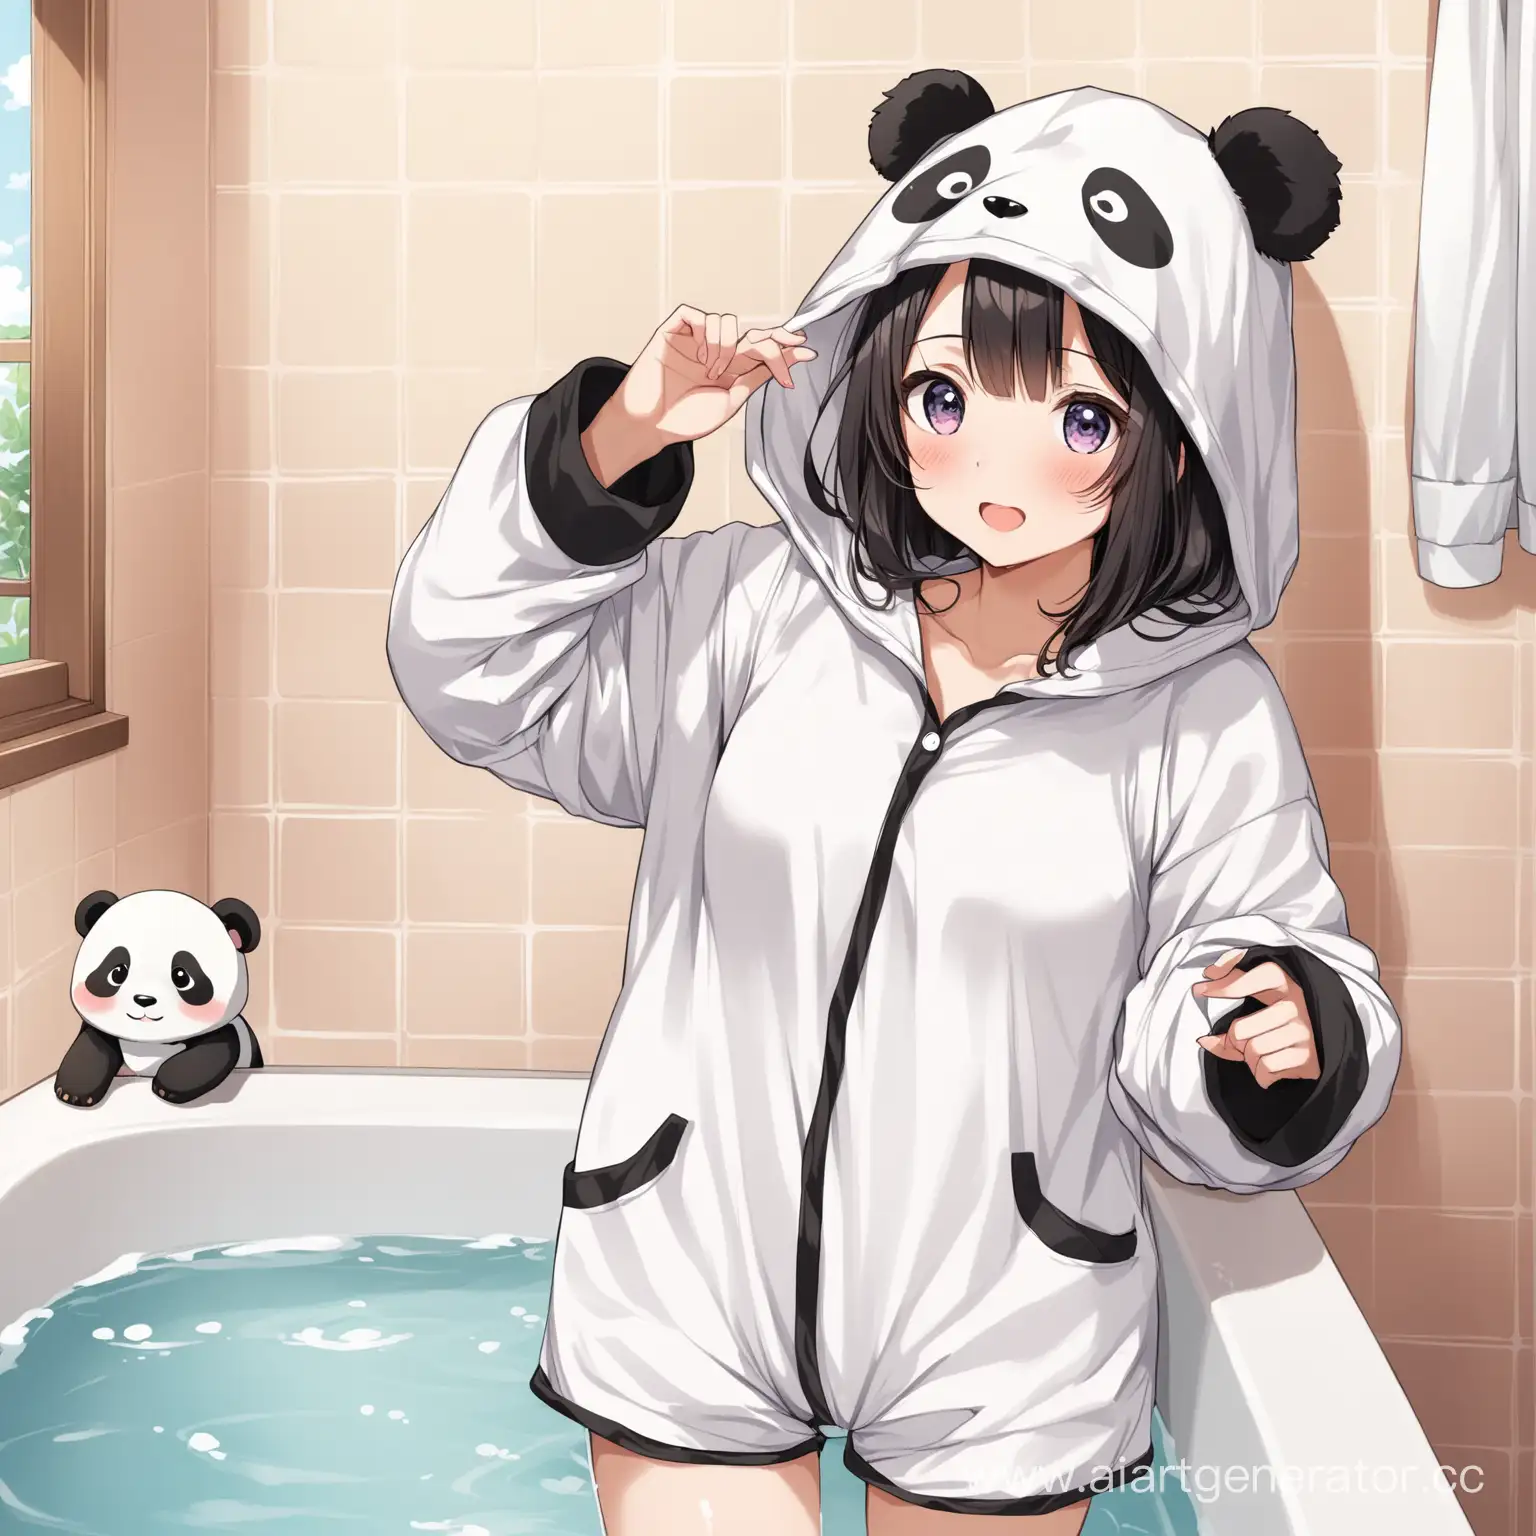 Girl-Relaxing-in-Bubble-Bath-with-Panda-Pajamas